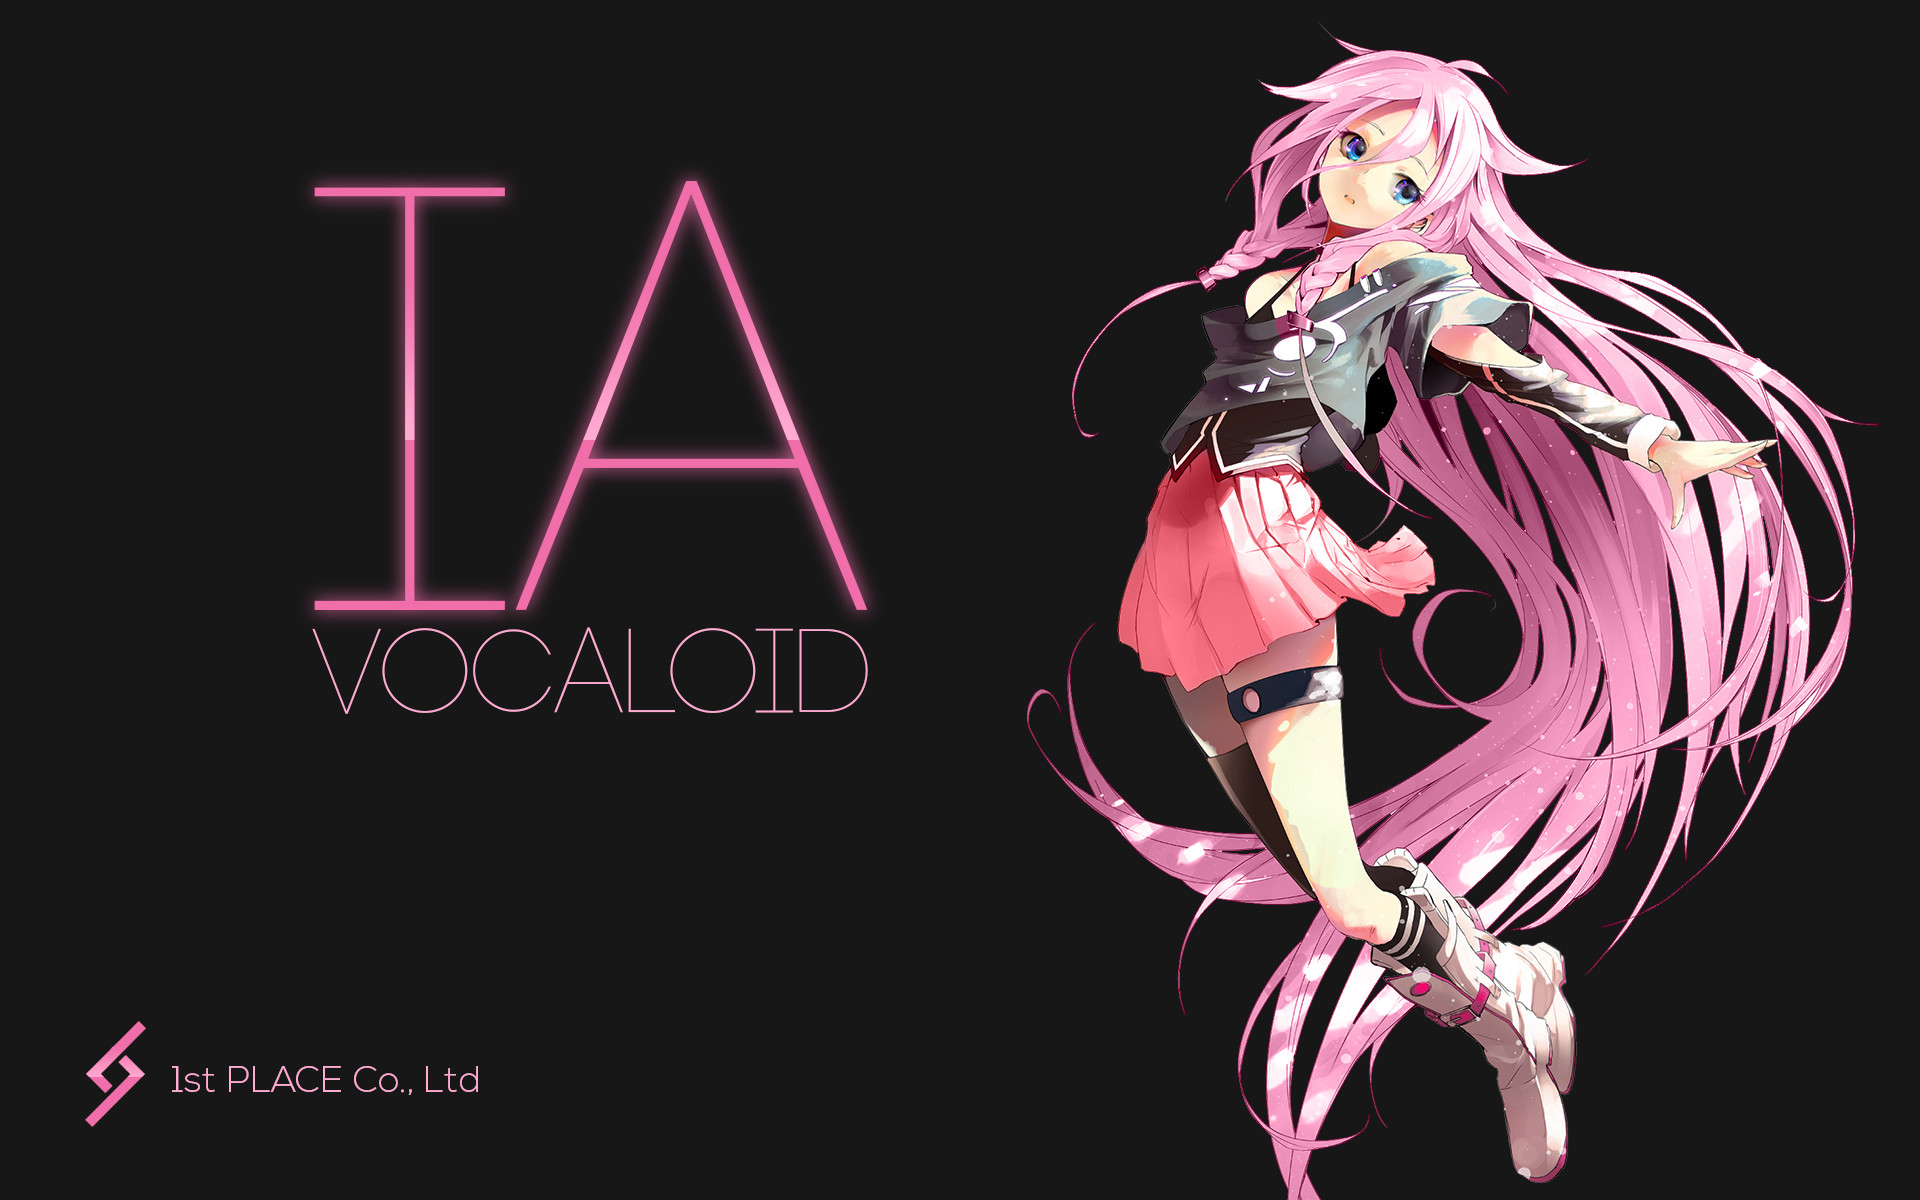 Vocaloid Ia 14 04 06 12 壁紙 厳選アニメ壁紙 アルチビオ Anime Wallpaper